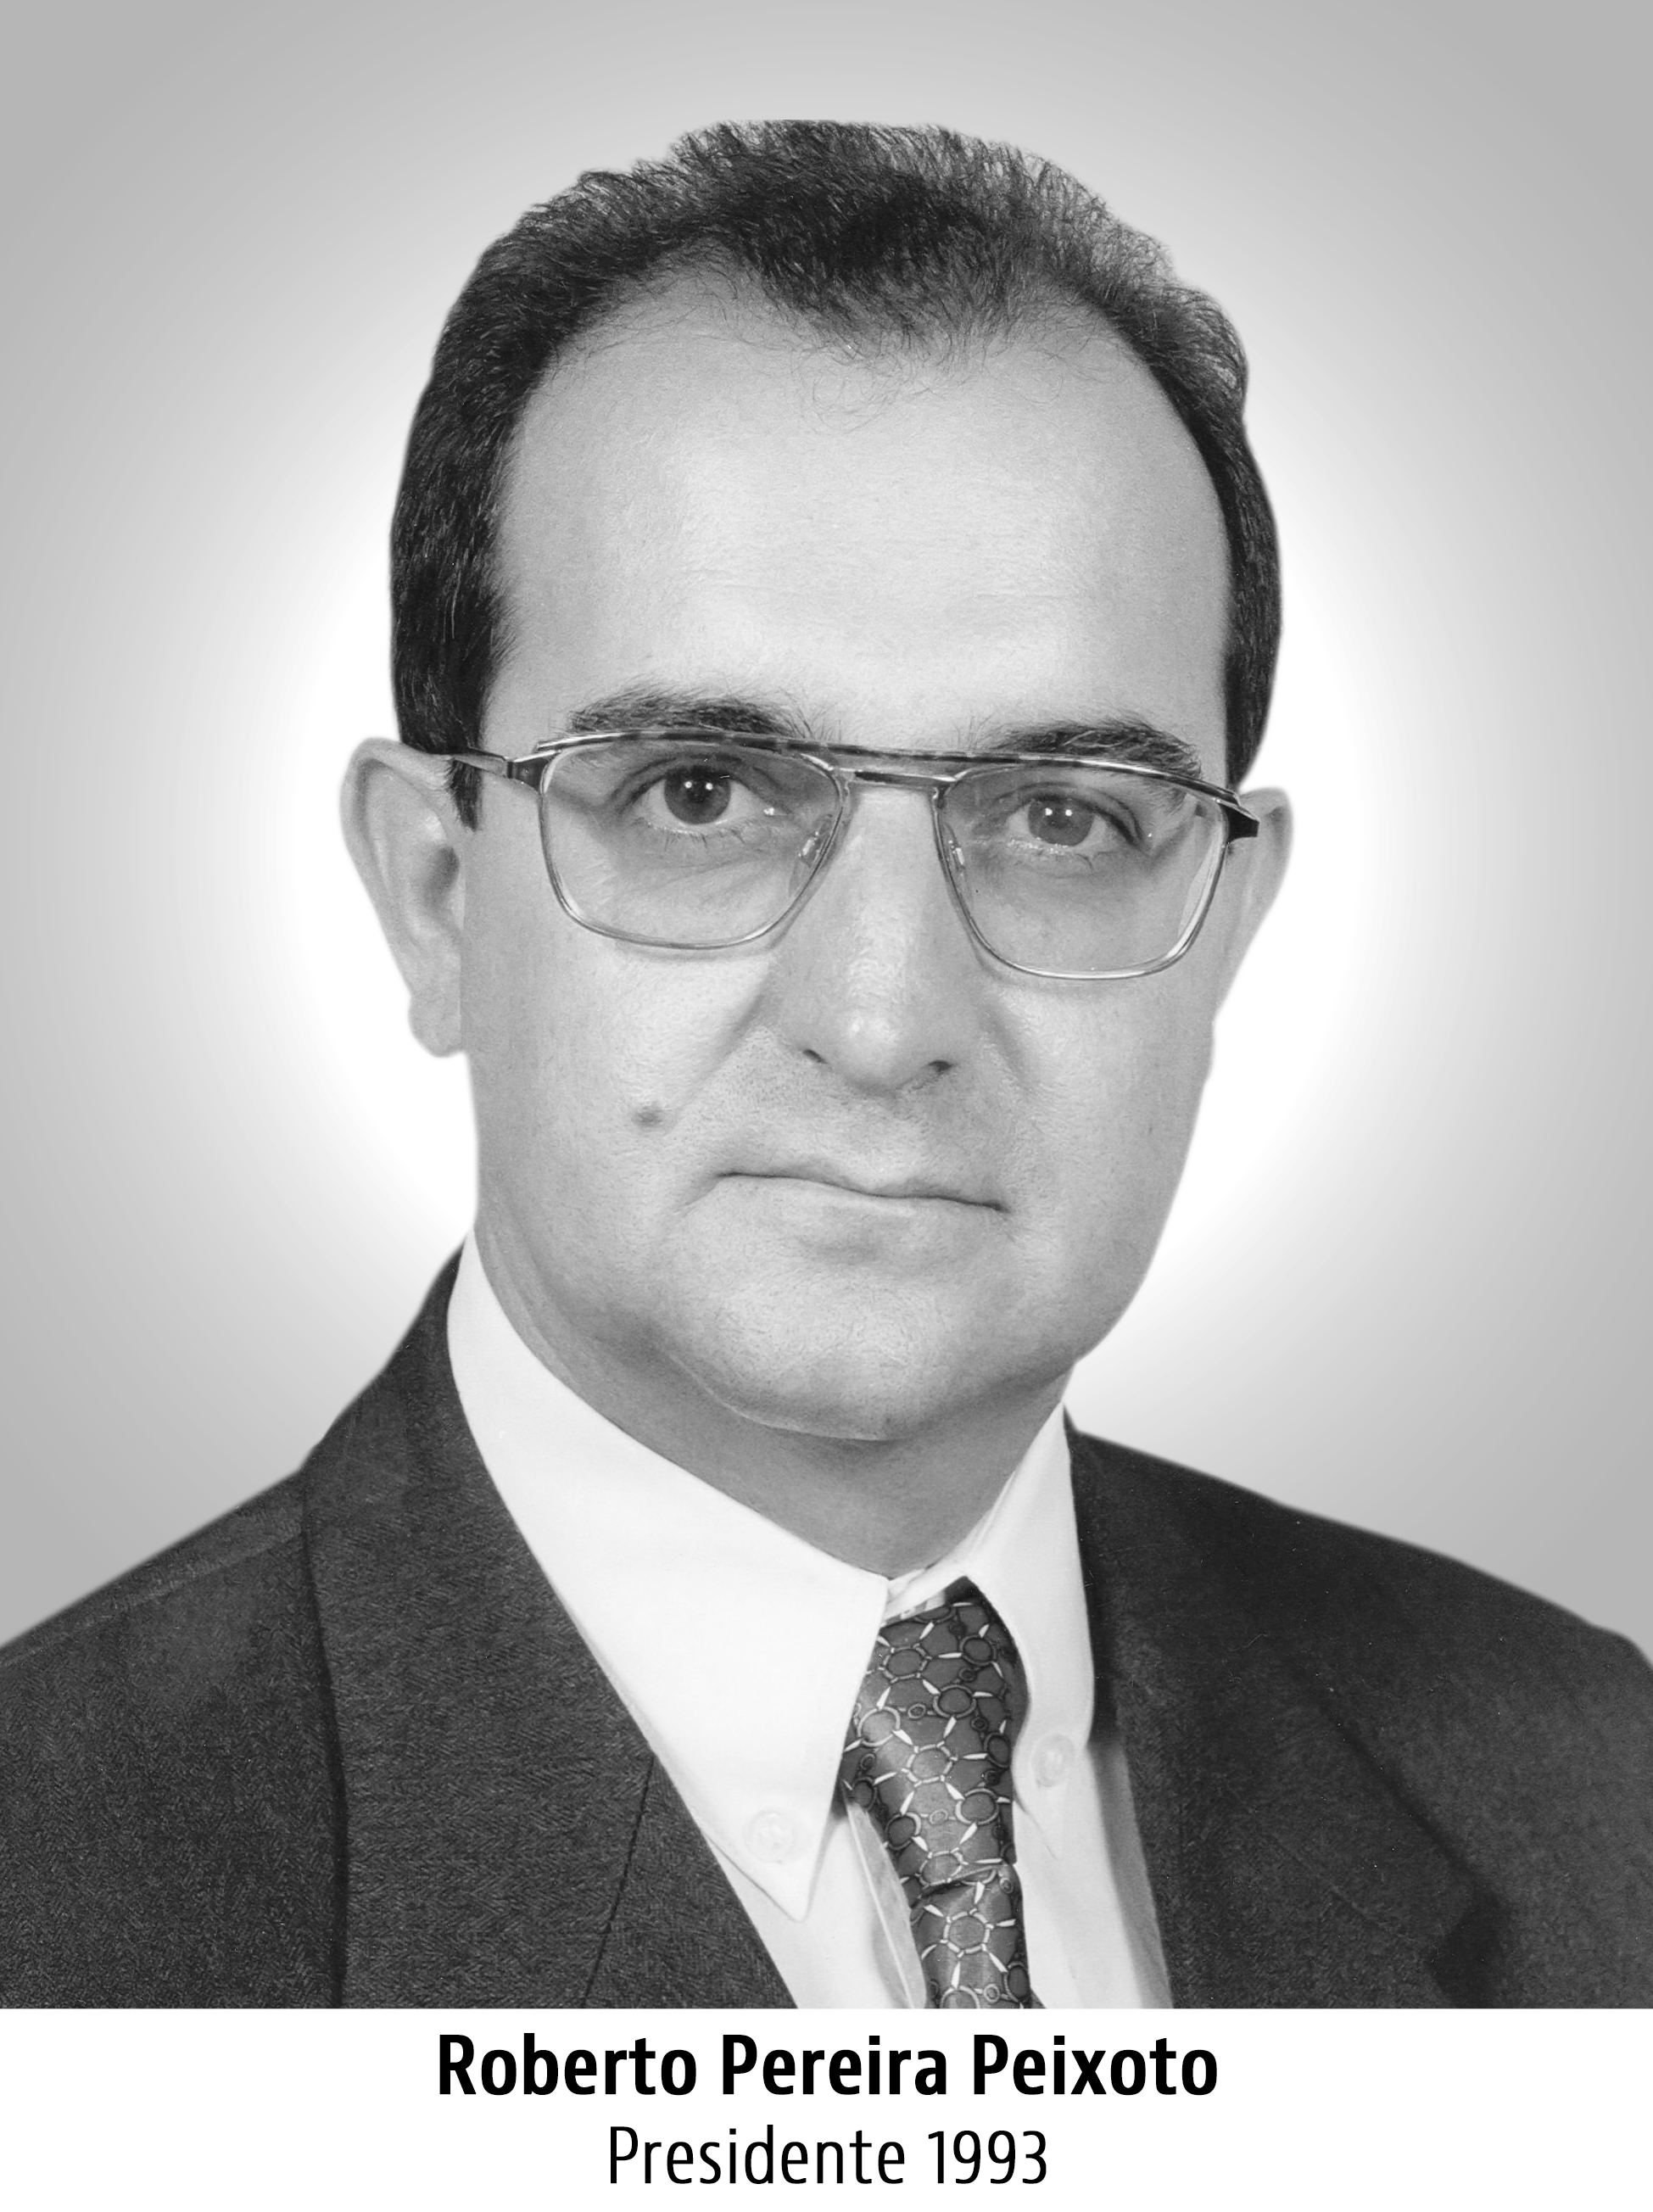 Roberto Pereira Peixoto